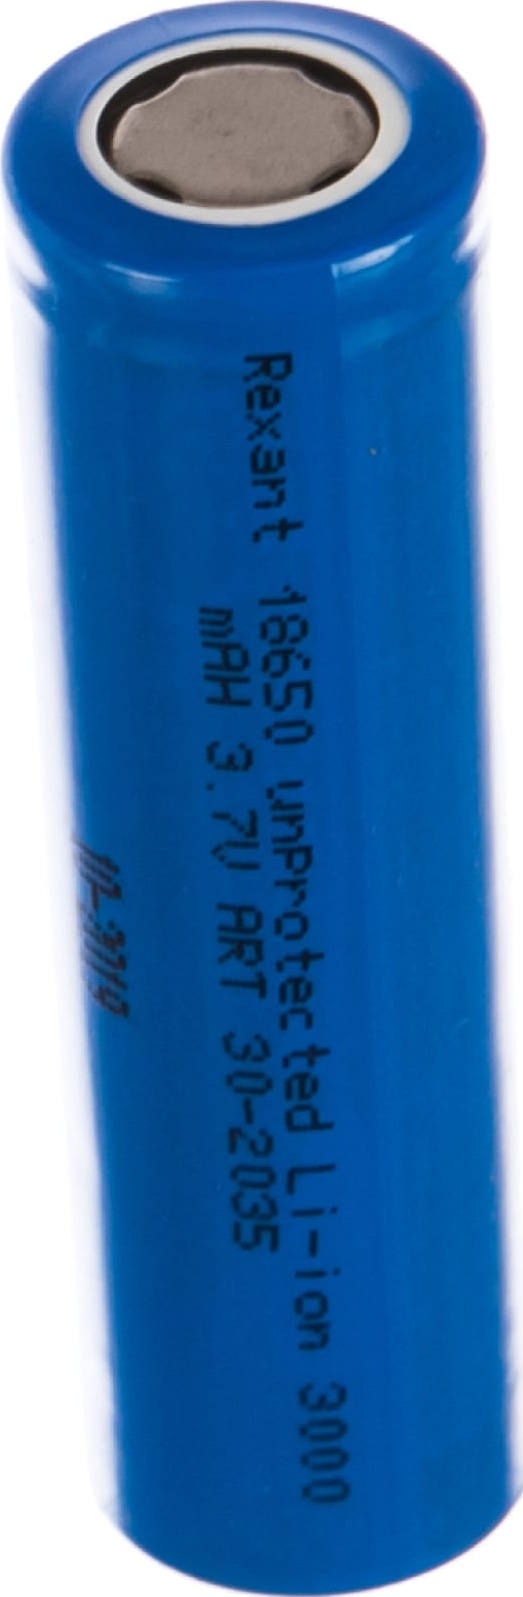 Высокоемкостный  аккумулятор Rexant 18650 без защиты unprotected 20 А Li-ion 3000 mAH 3.7 В